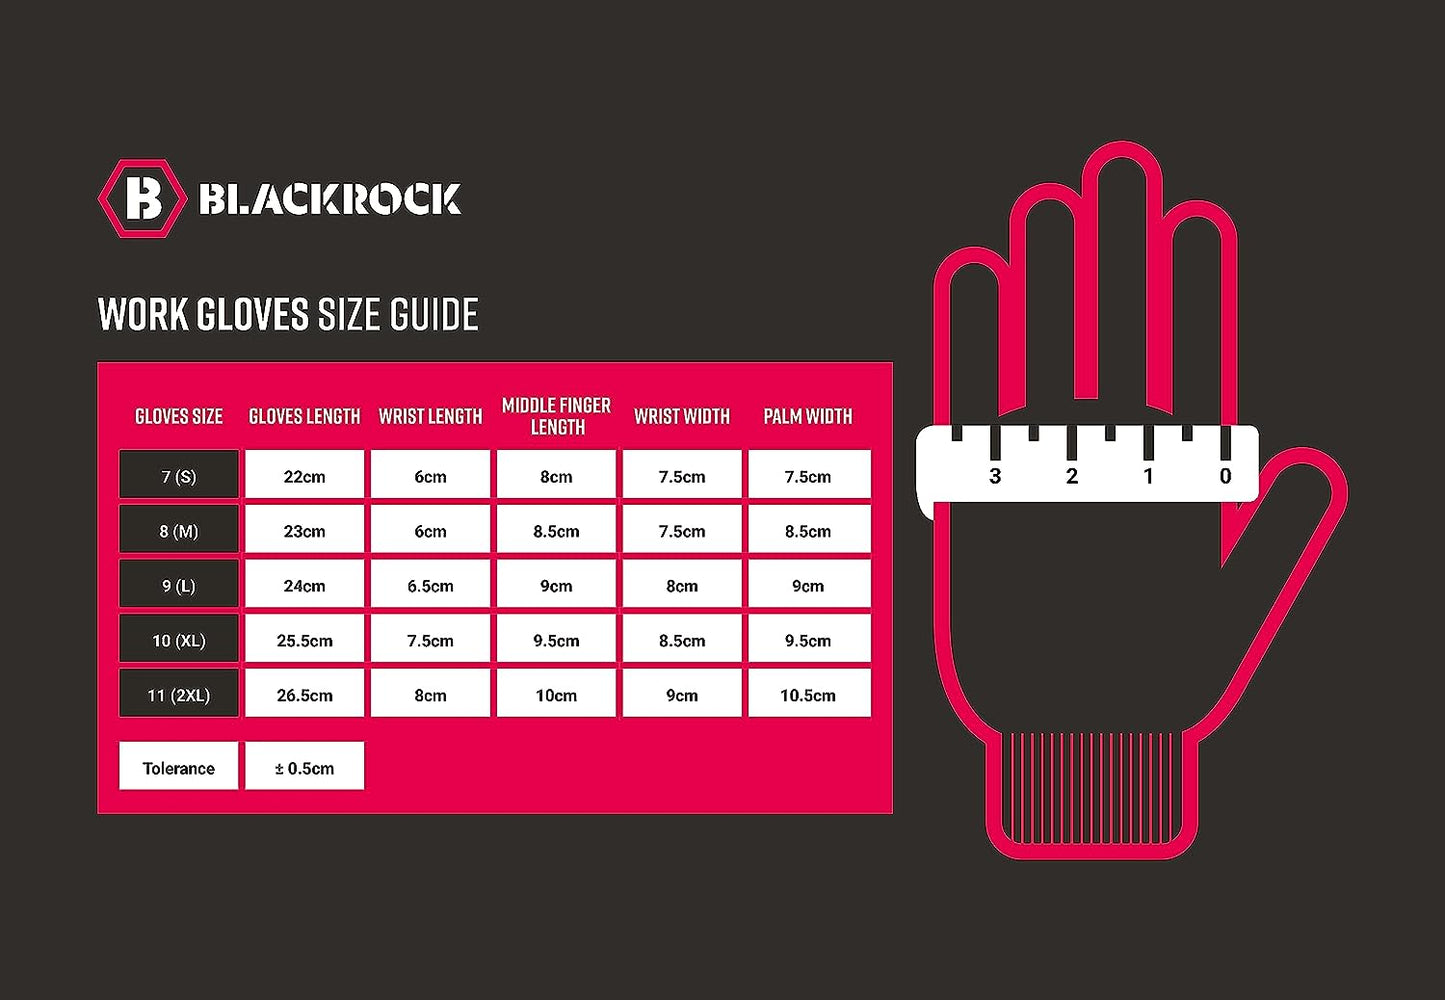 Lightweight Nitrile Super Grip Gloves by Blackrock